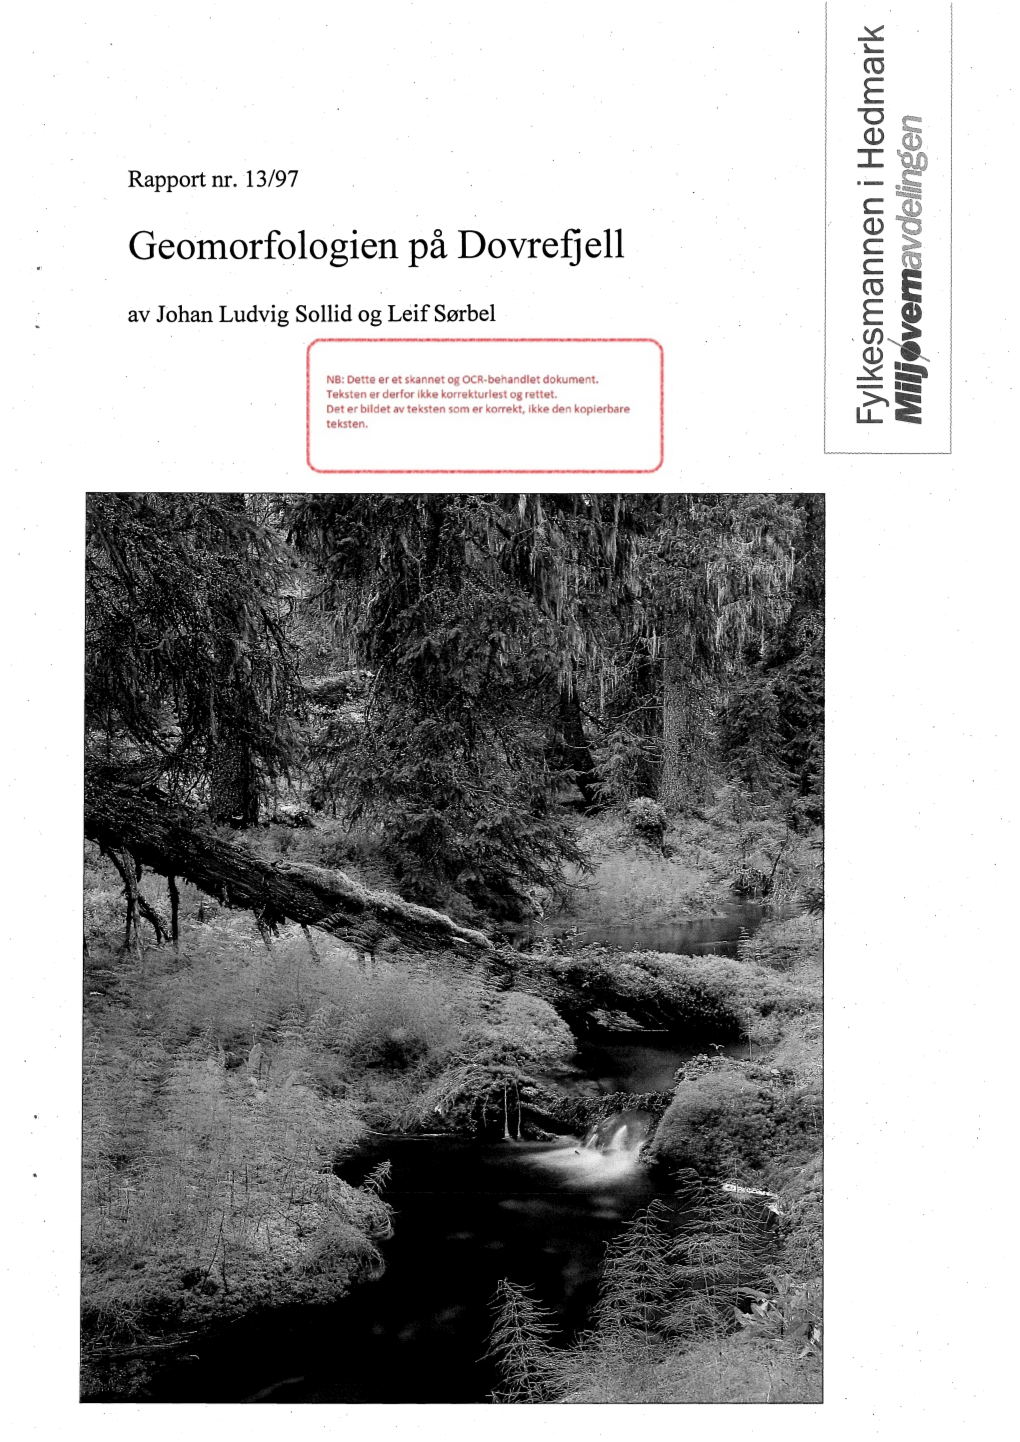 Geomorfologien På Dovrefjell Av Johan Ludvig Sollid Og Leif Sørbel 39 + Vedlegg ISSN-Nr: ISSN 0802-7013 ISBN-Nr: ISBN 82-7555- 078-5